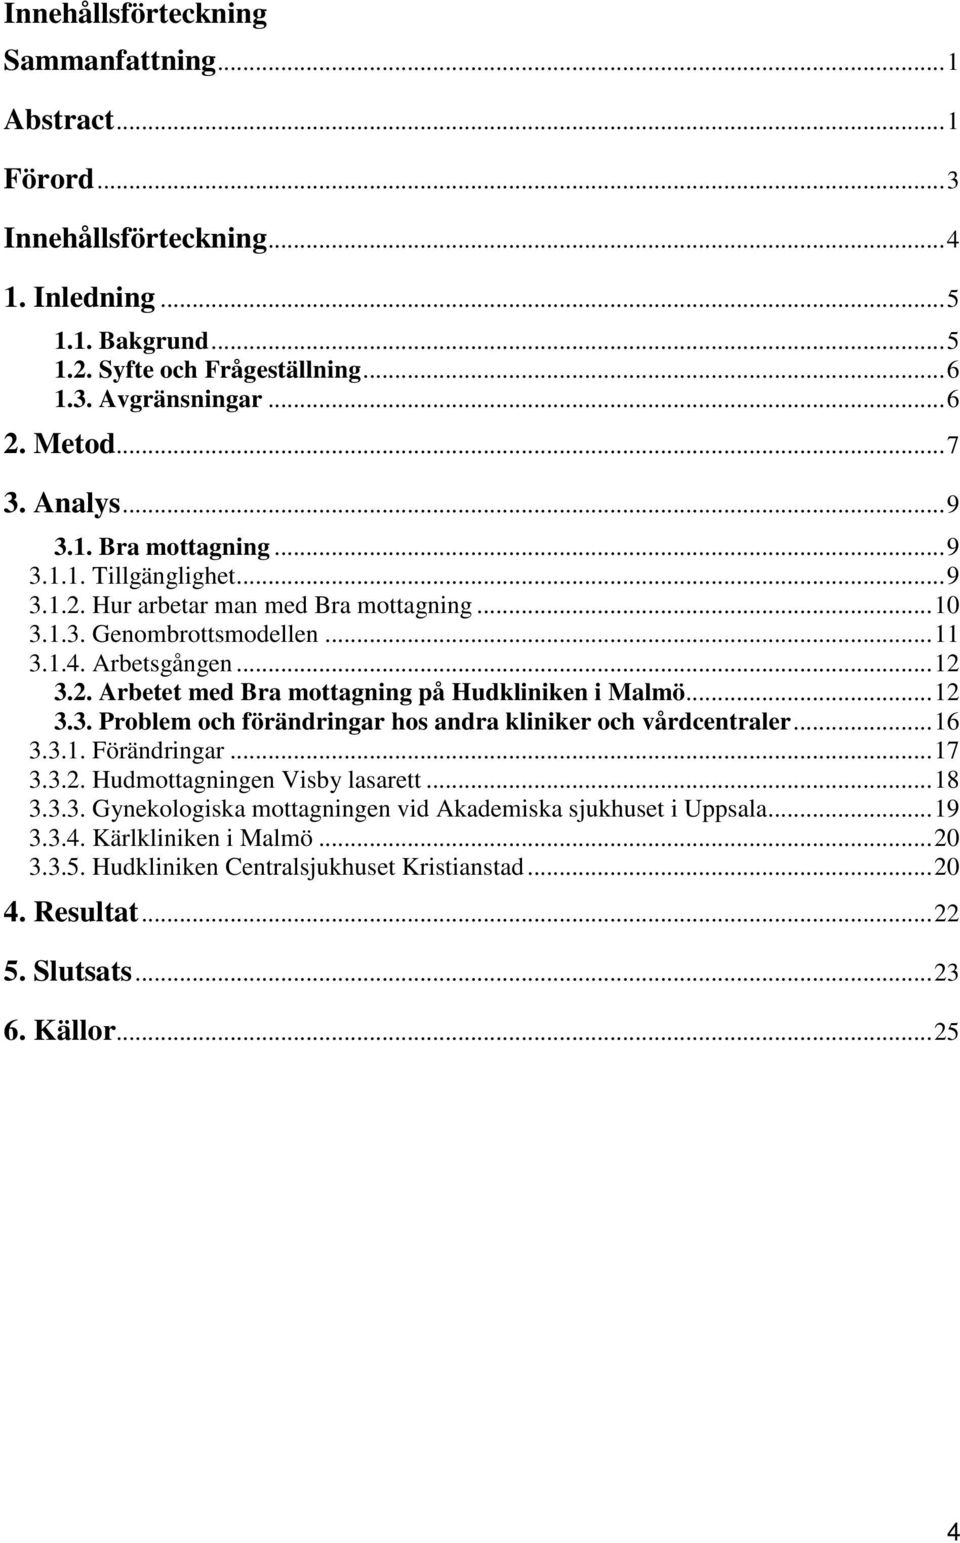 ..12 3.3. Problem och förändringar hos andra kliniker och vårdcentraler...16 3.3.1. Förändringar...17 3.3.2. Hudmottagningen Visby lasarett...18 3.3.3. Gynekologiska mottagningen vid Akademiska sjukhuset i Uppsala.